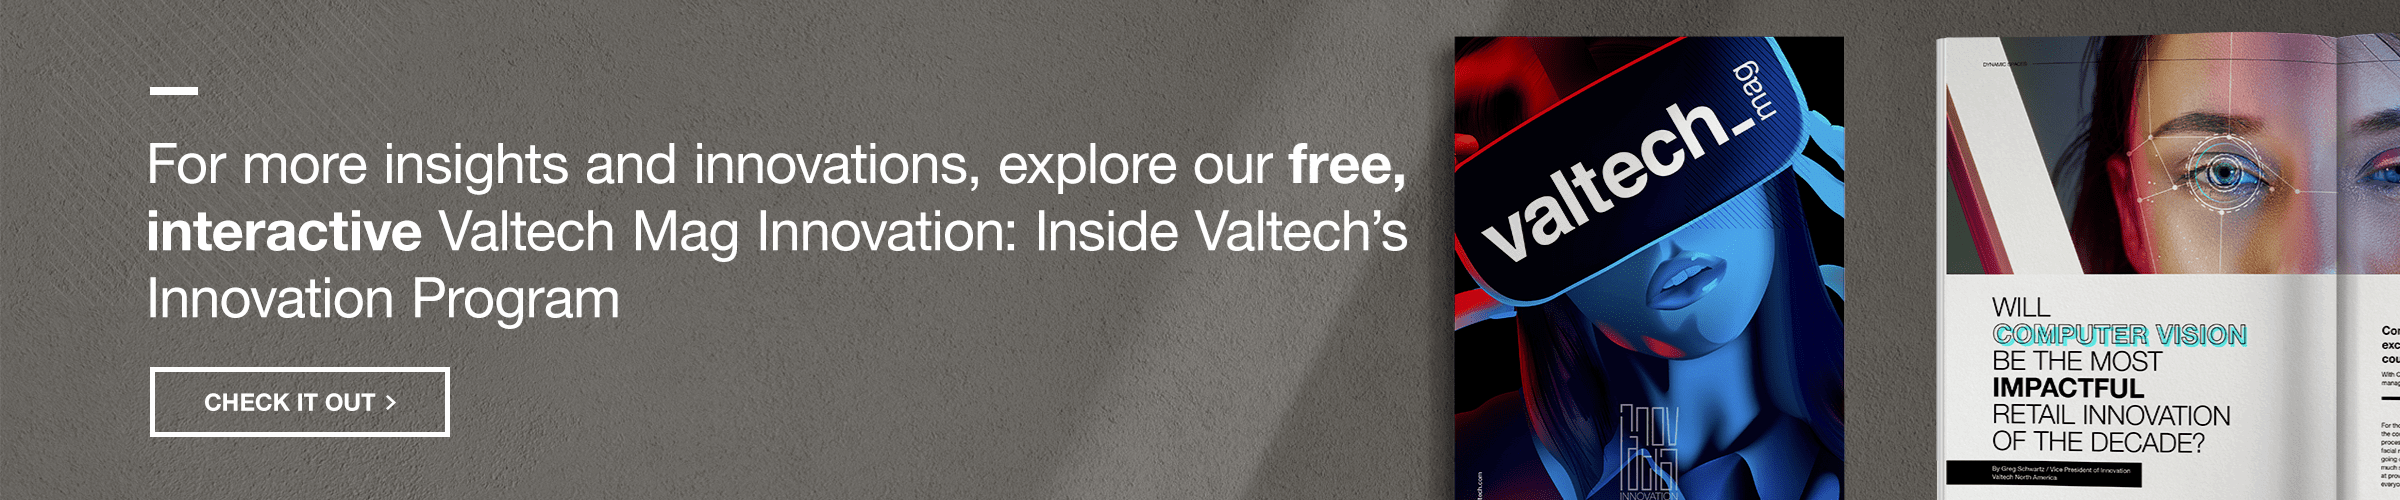 Valtech Mag Innovation download